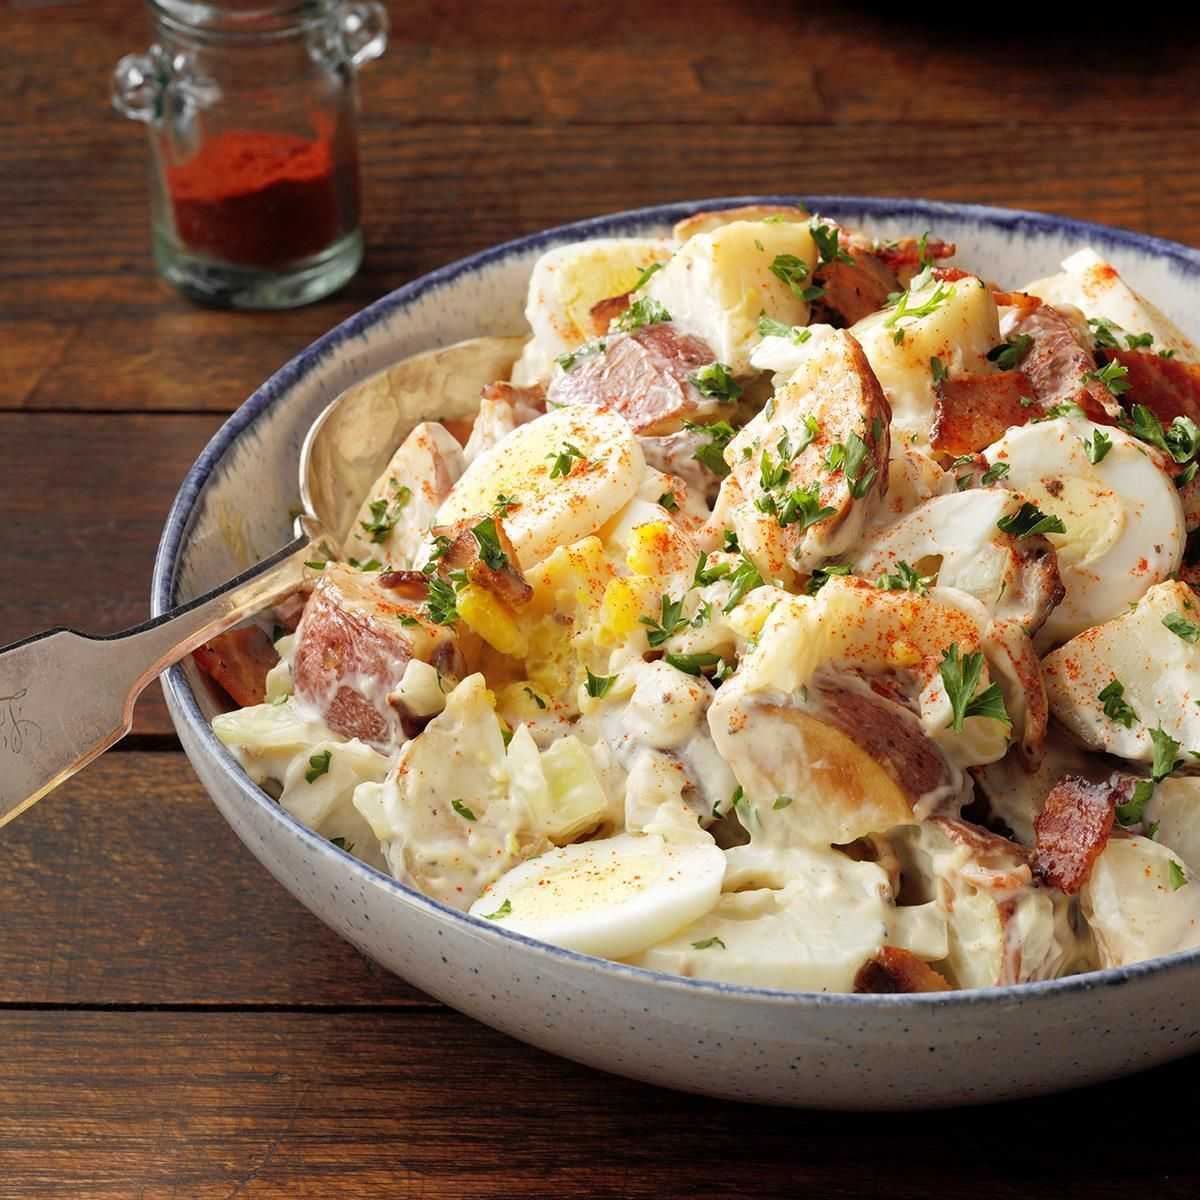 Картофельный салат - 439 домашних вкусных рецептов приготовления